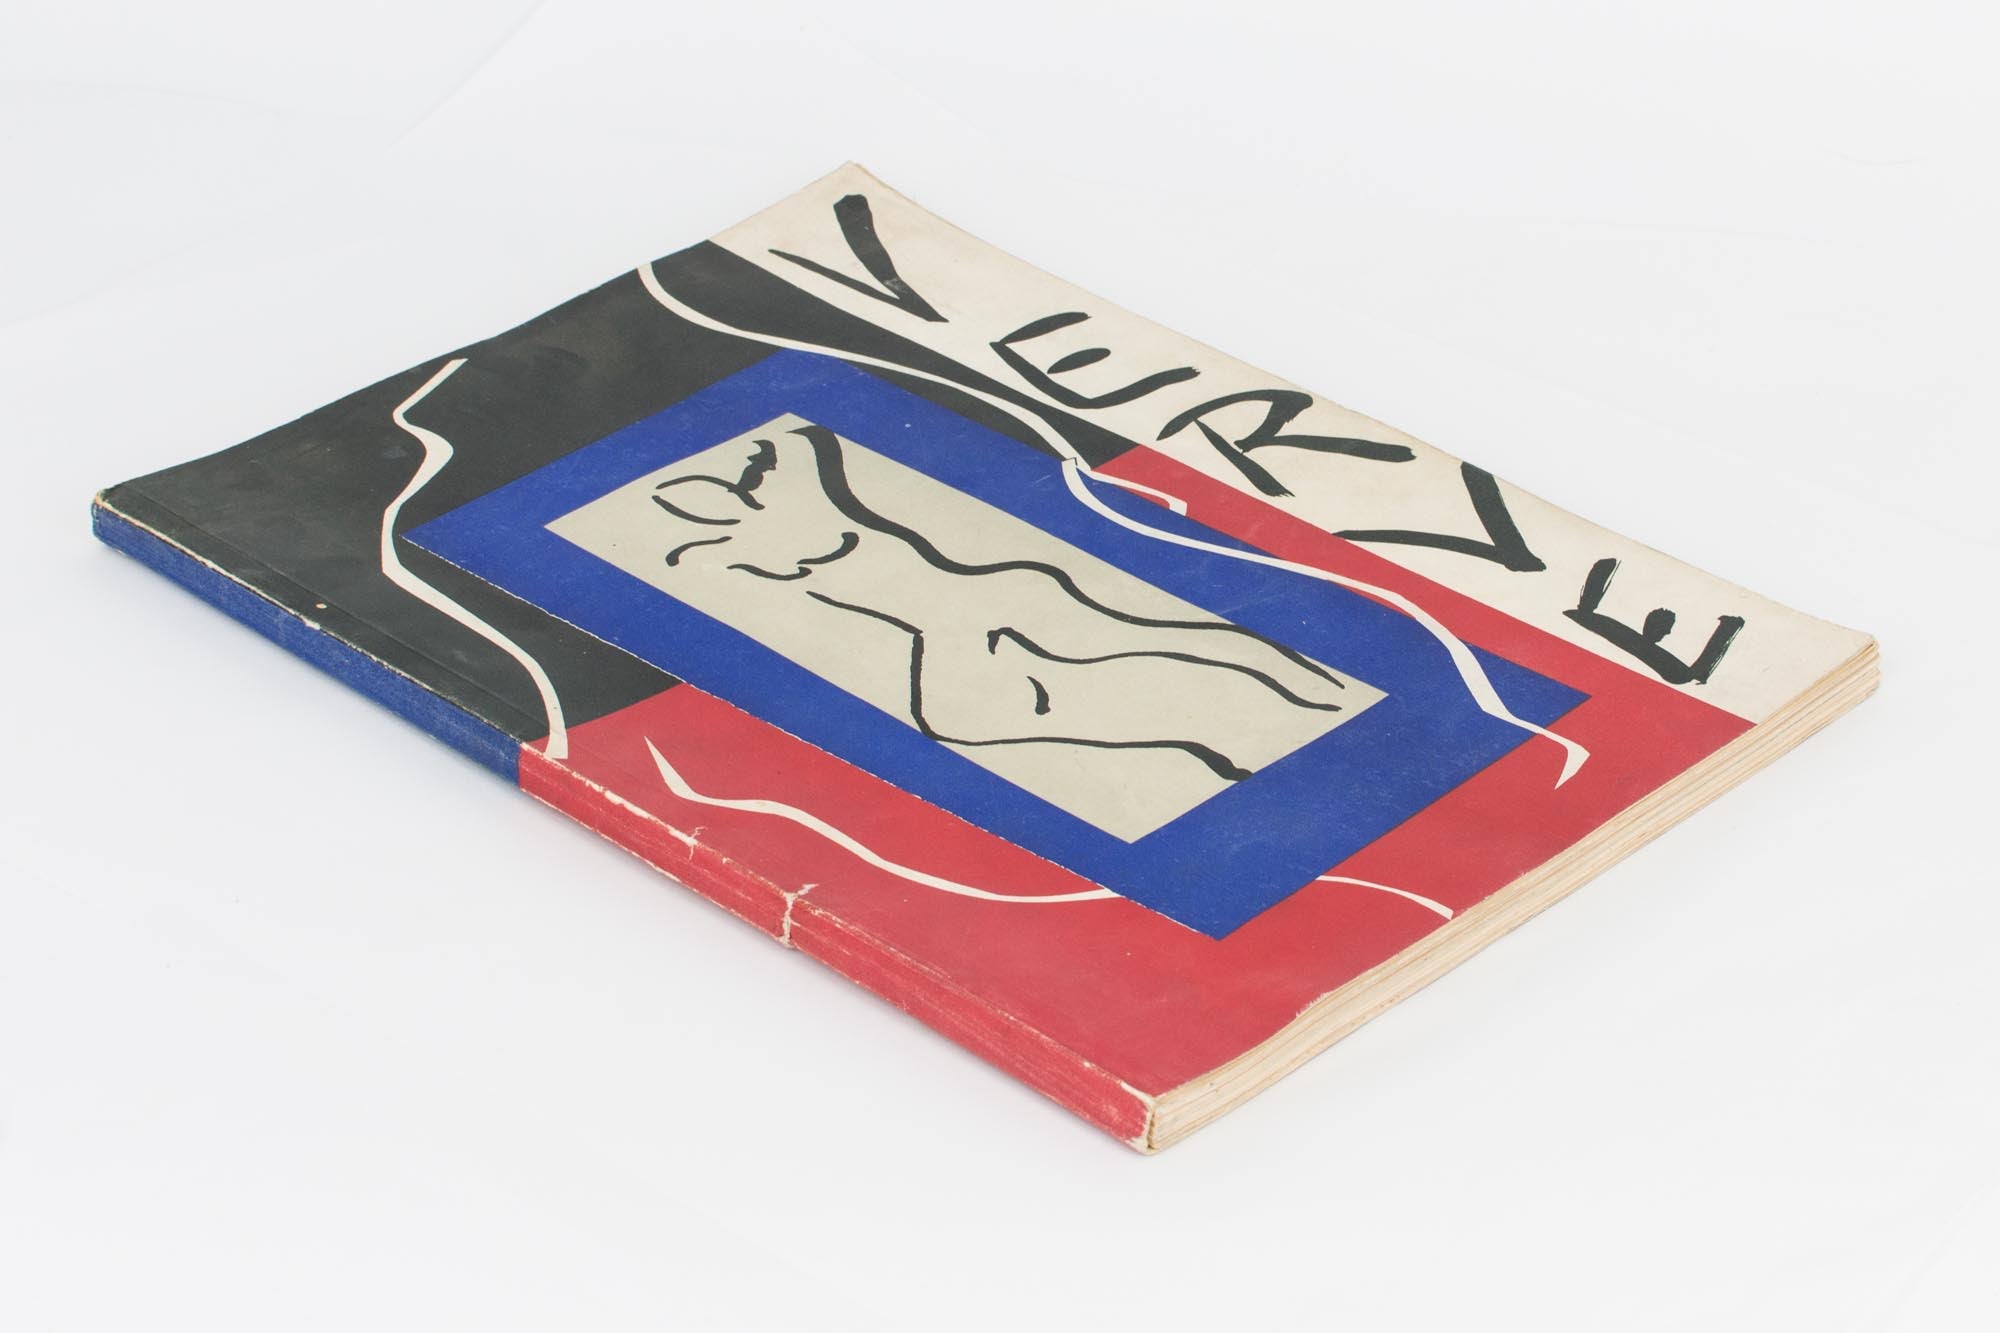 正規品豊富な2G1-1『VERVE 合本版』ヴェルブ 1937-1960年まで発刊された美術評論雑誌 地球上で最も美しい雑誌とよばれた 美術 芸術 大型本 ハードカバー 画集